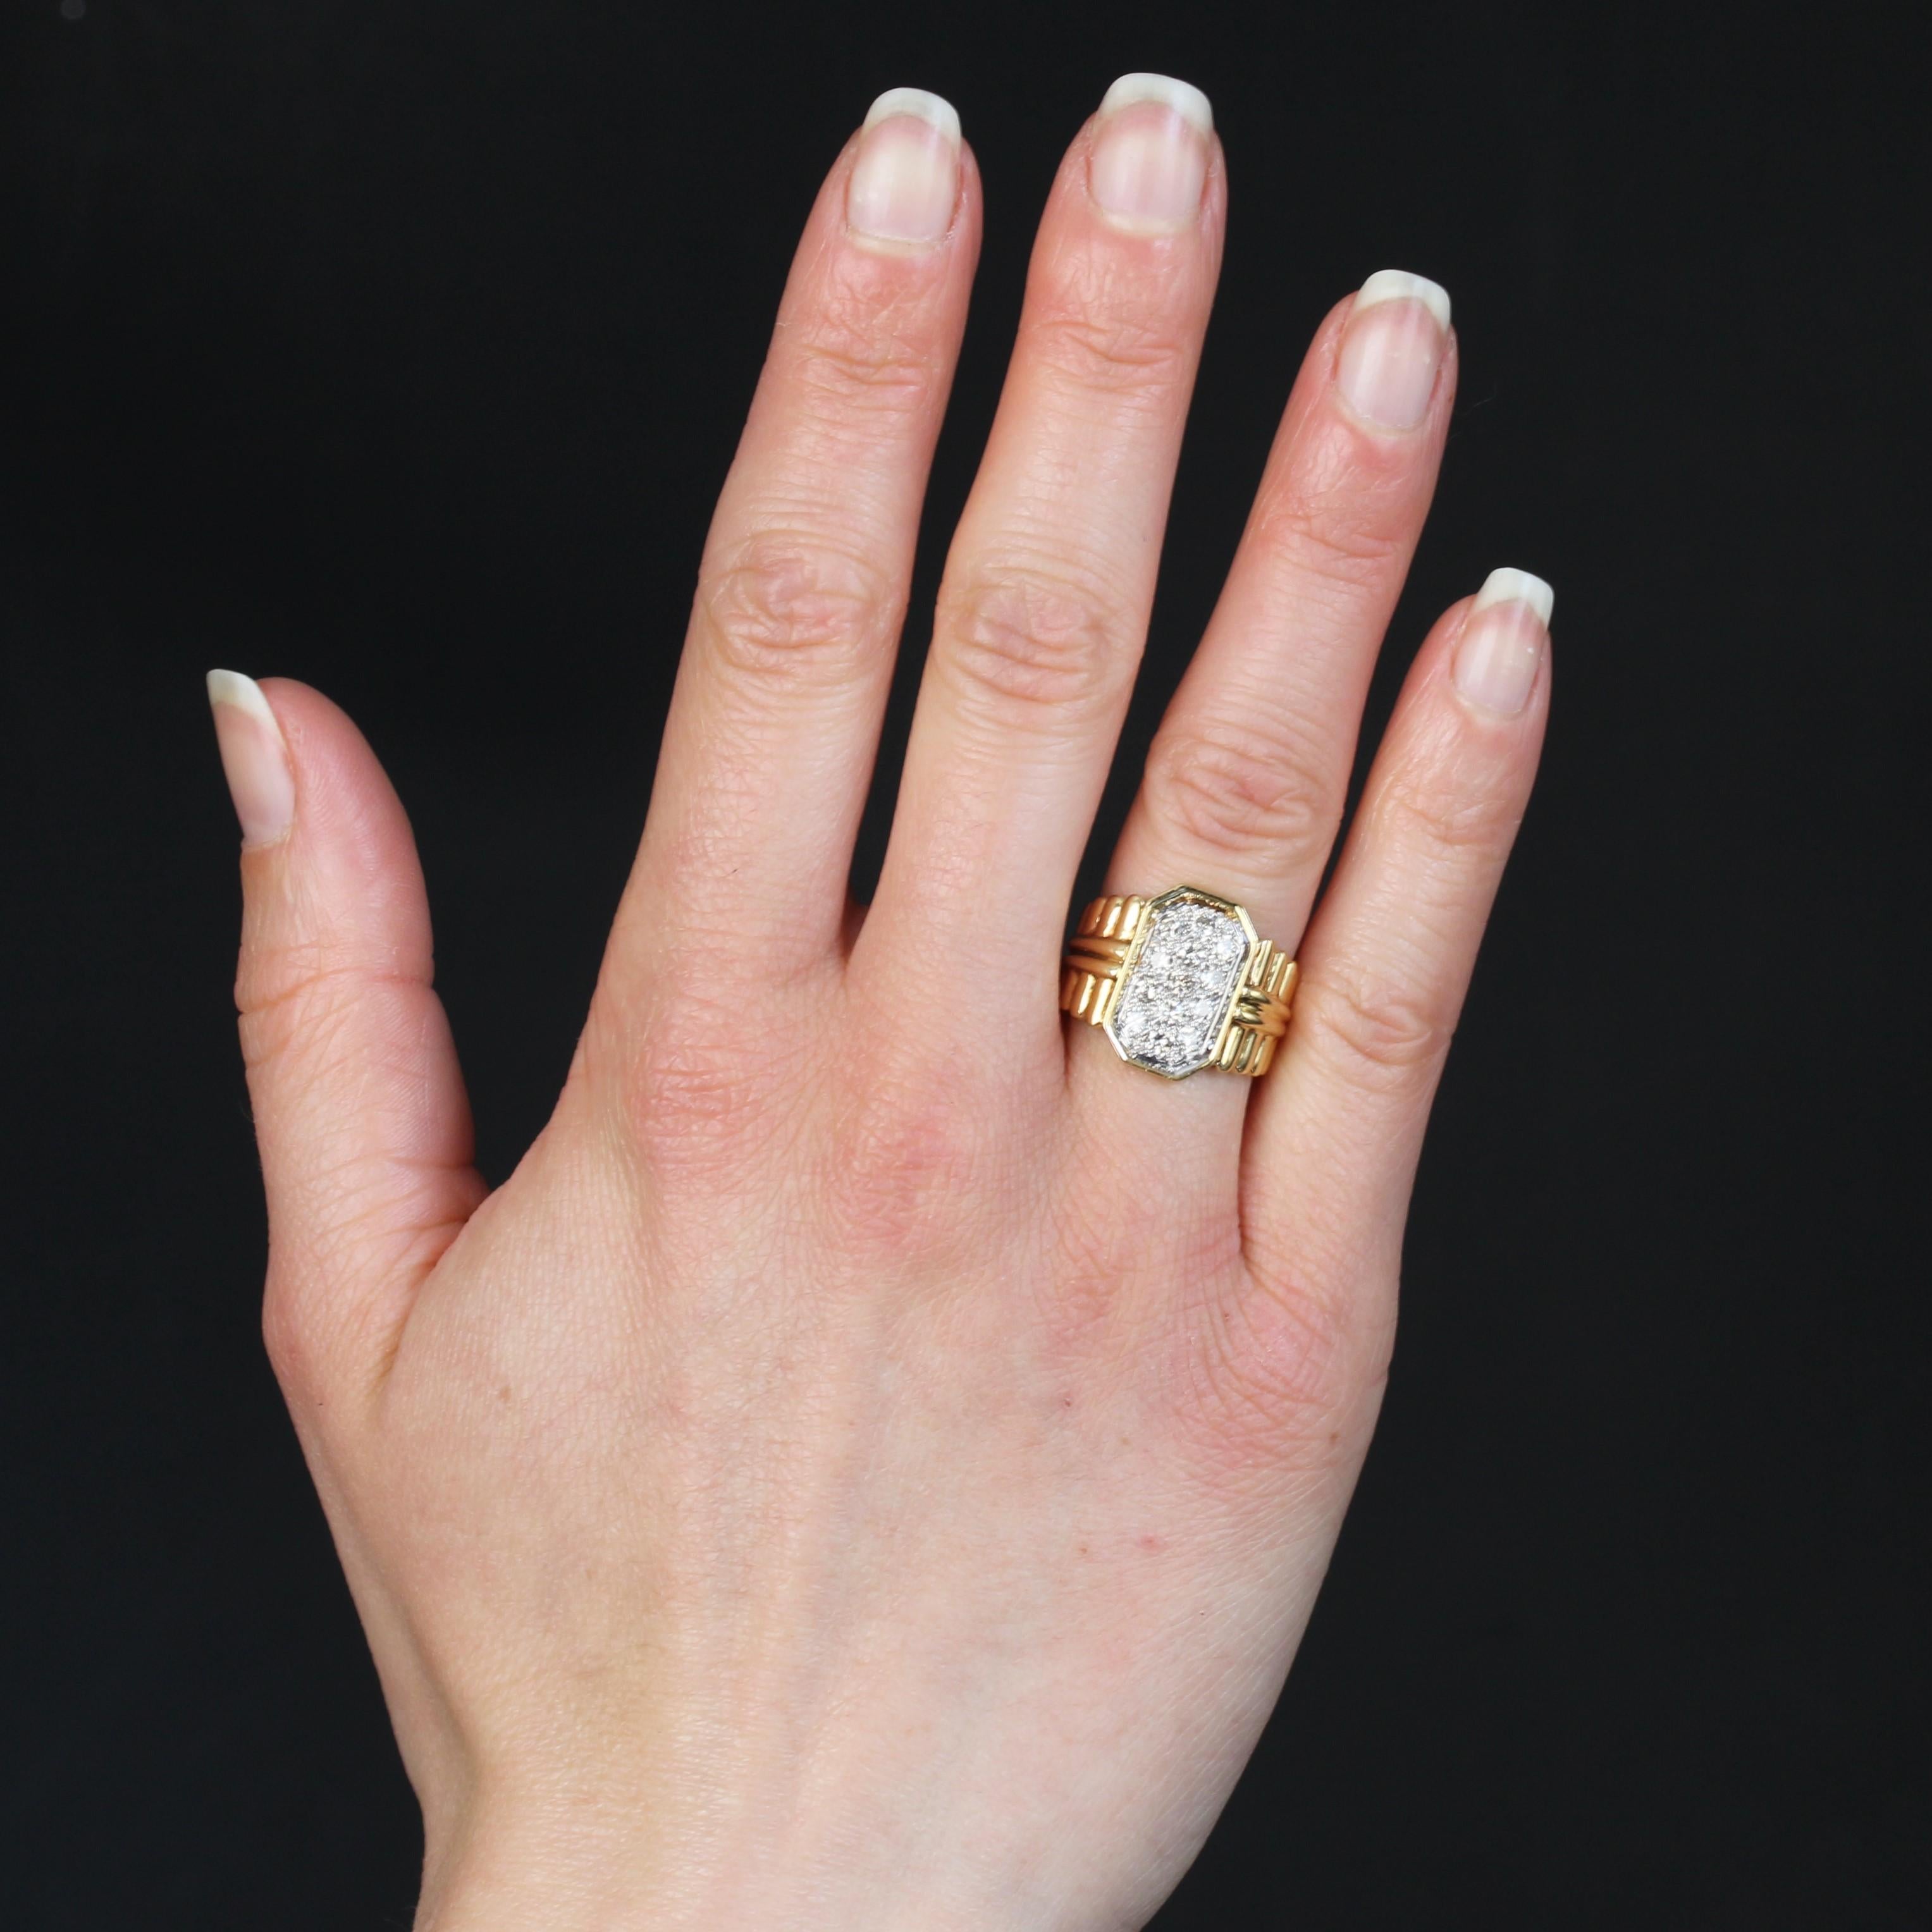 Ring aus 18 Karat Gelbgold, Stempel des Rüsselkäfers.
Retro Ring, sein Ring ist ein Fall und verziert mit gadrooned Muster fast an der Basis. Auf der Oberseite ist ein rechteckiges Muster mit geschliffenen Seiten mit modernen Diamanten im